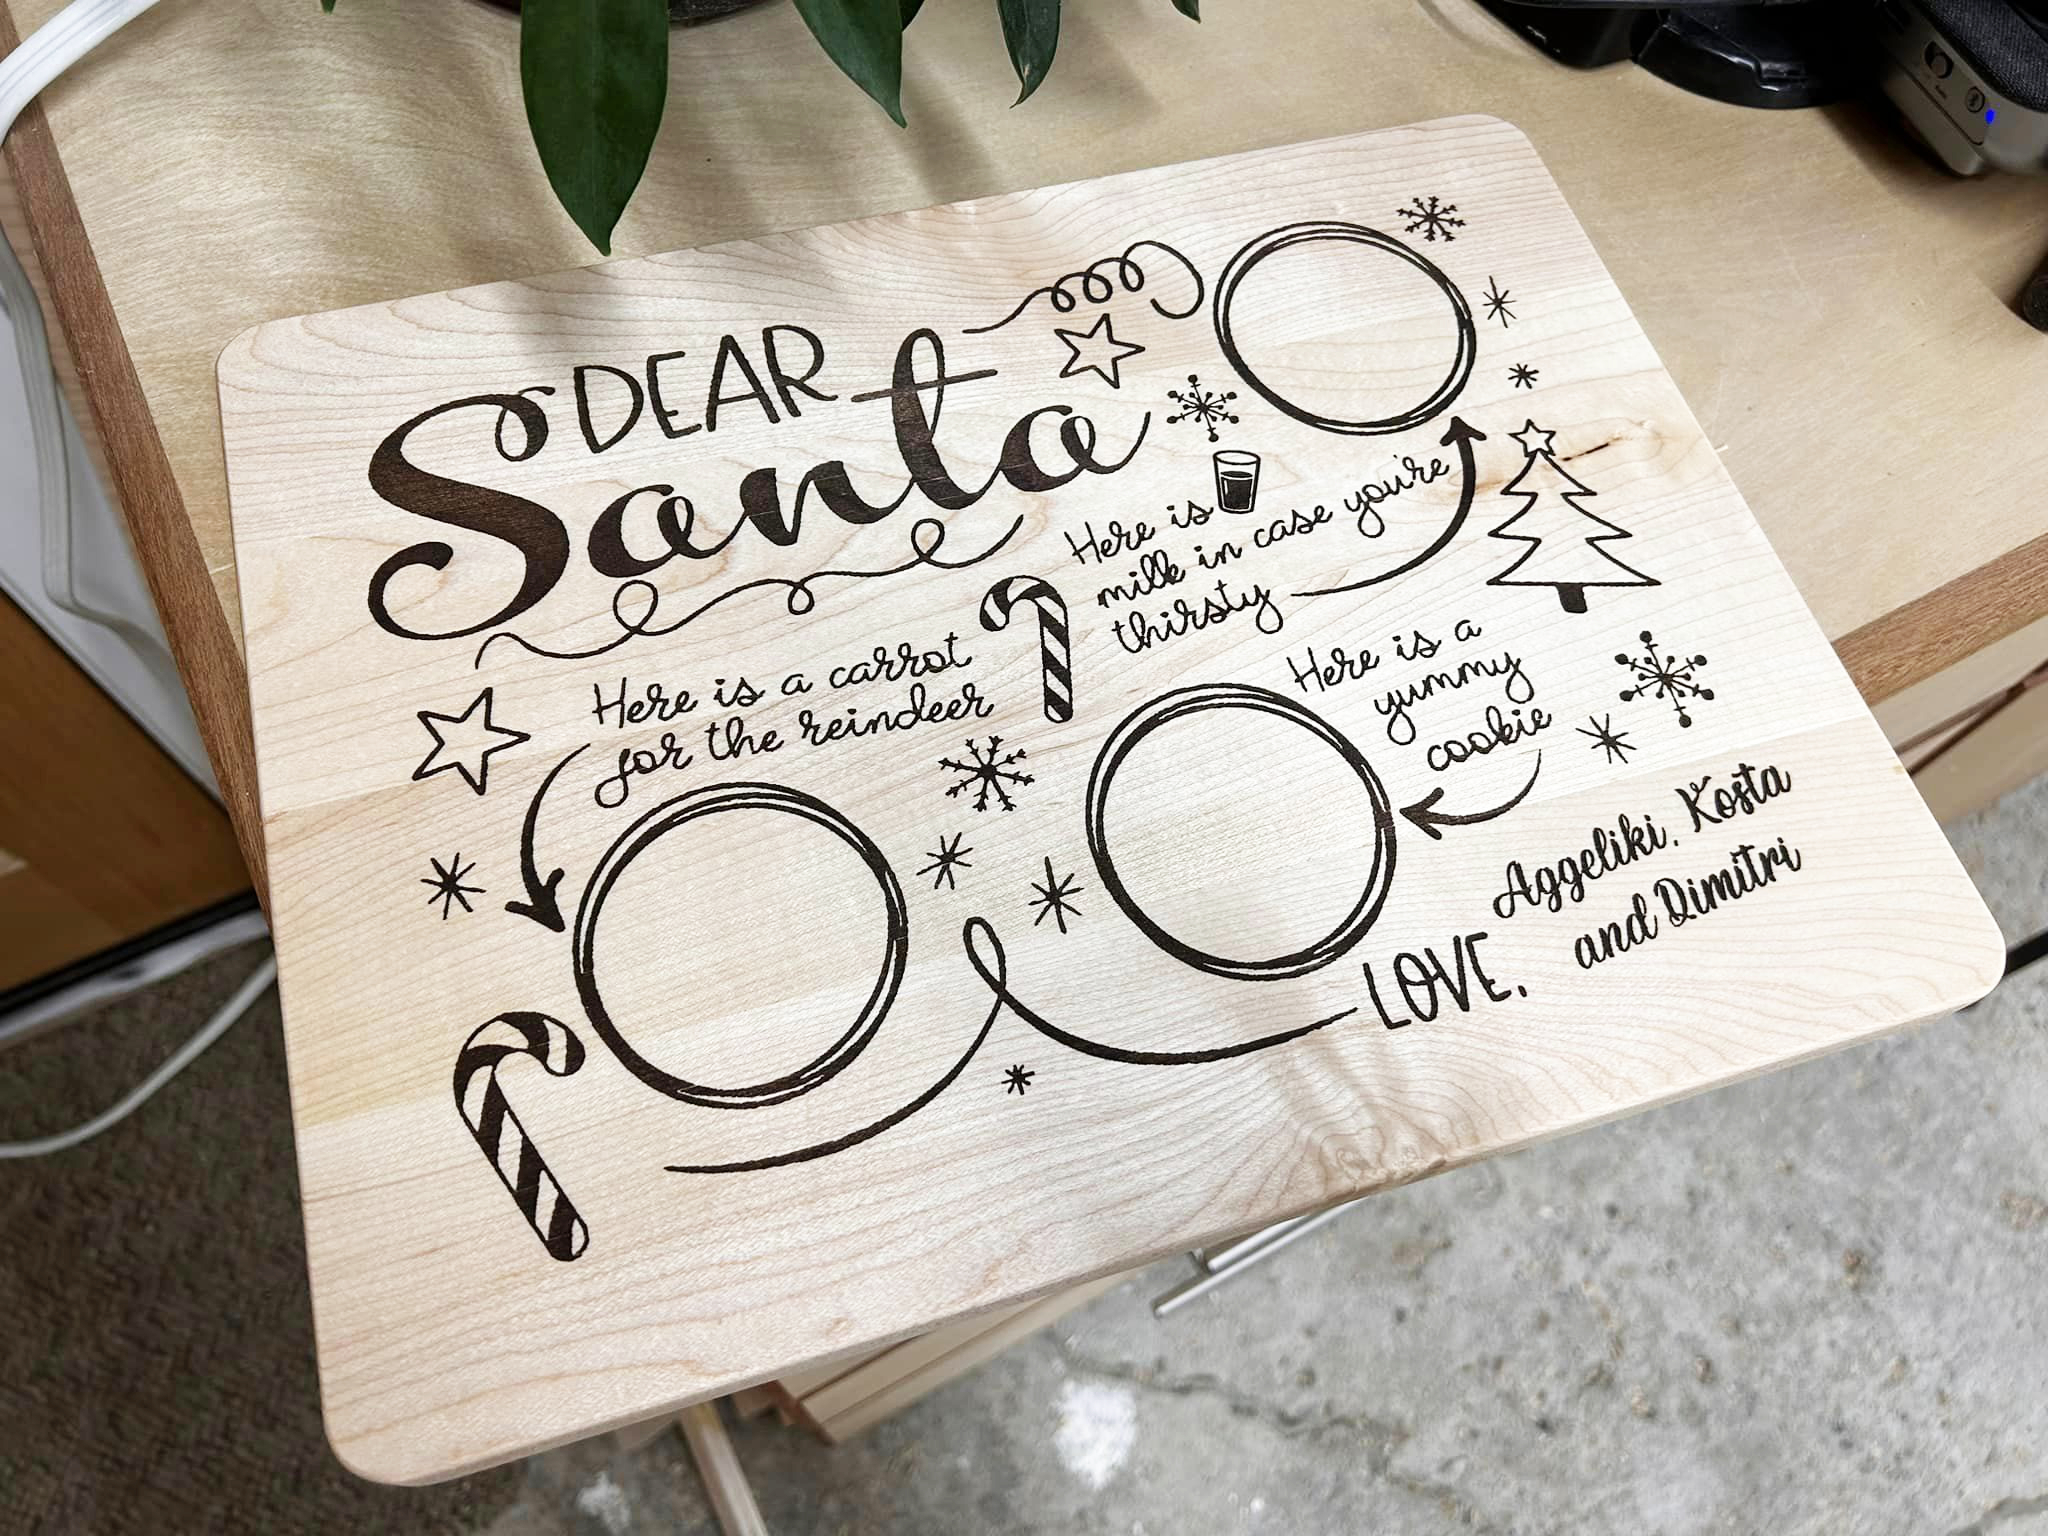 Santa’s board